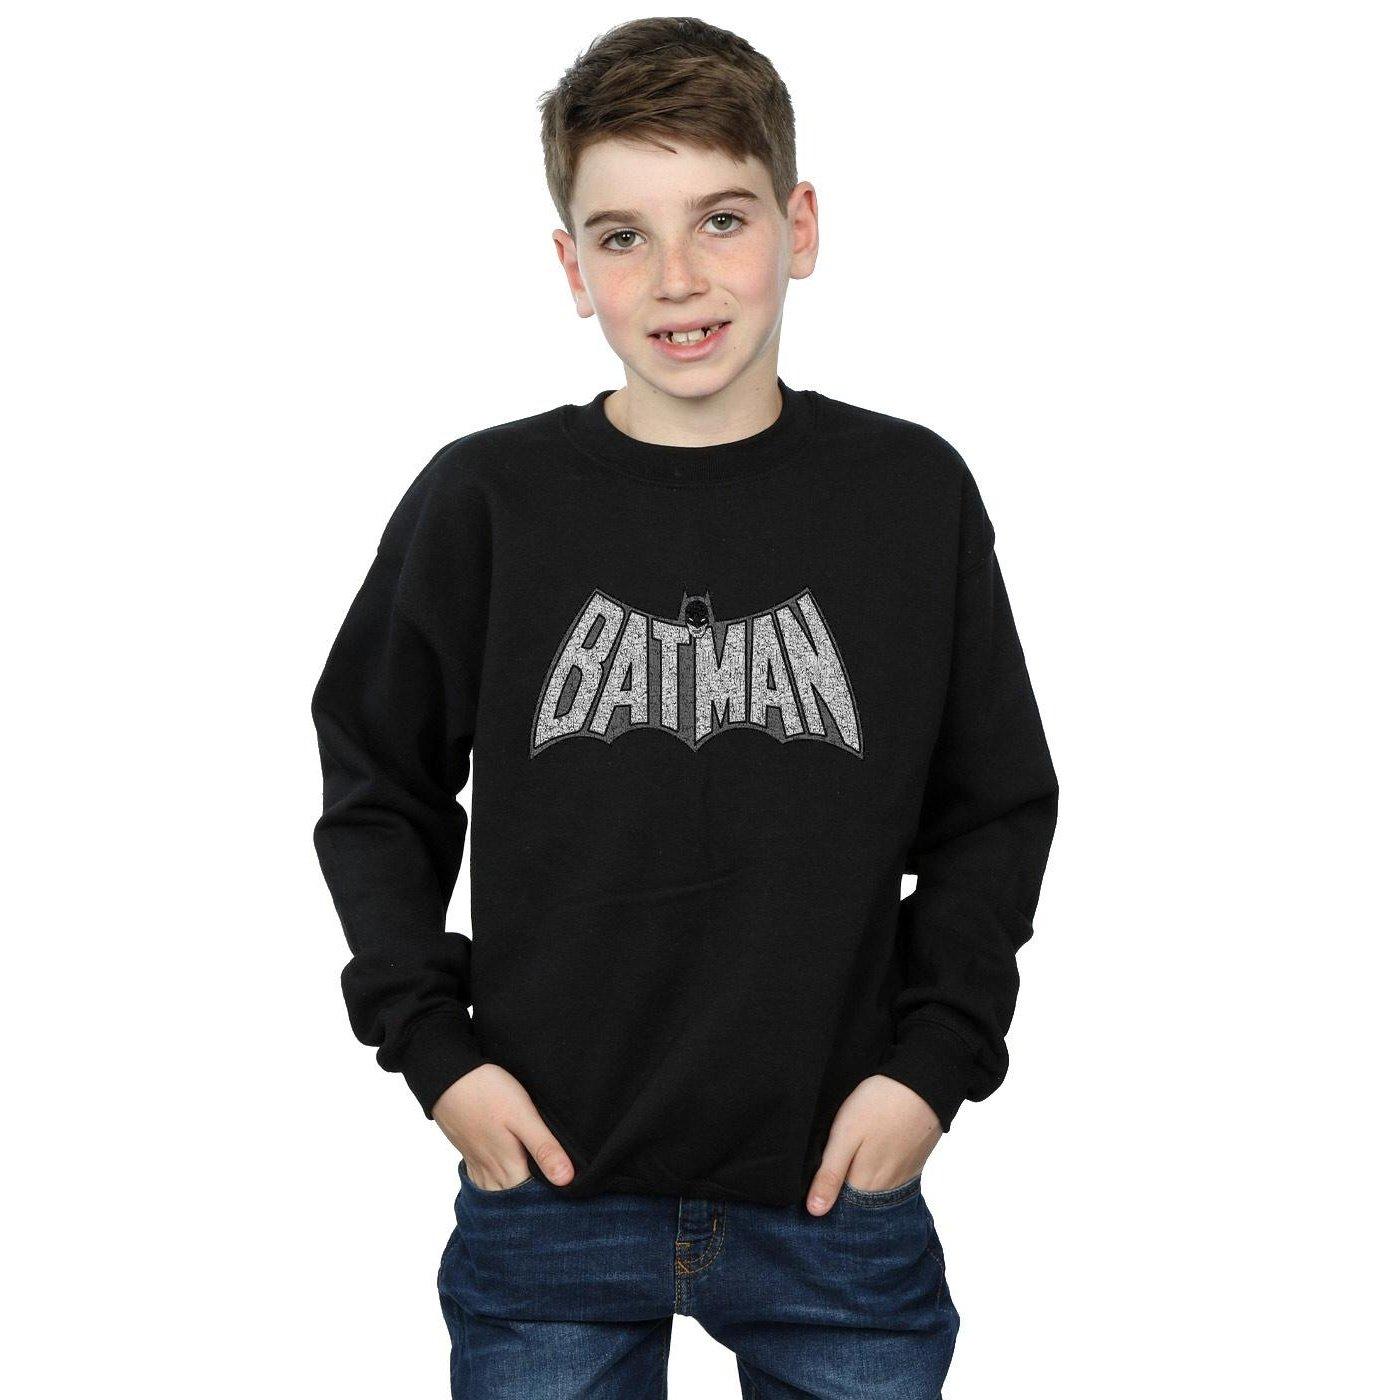 DC COMICS  Batman Retro Crackle Logo Sweatshirt 